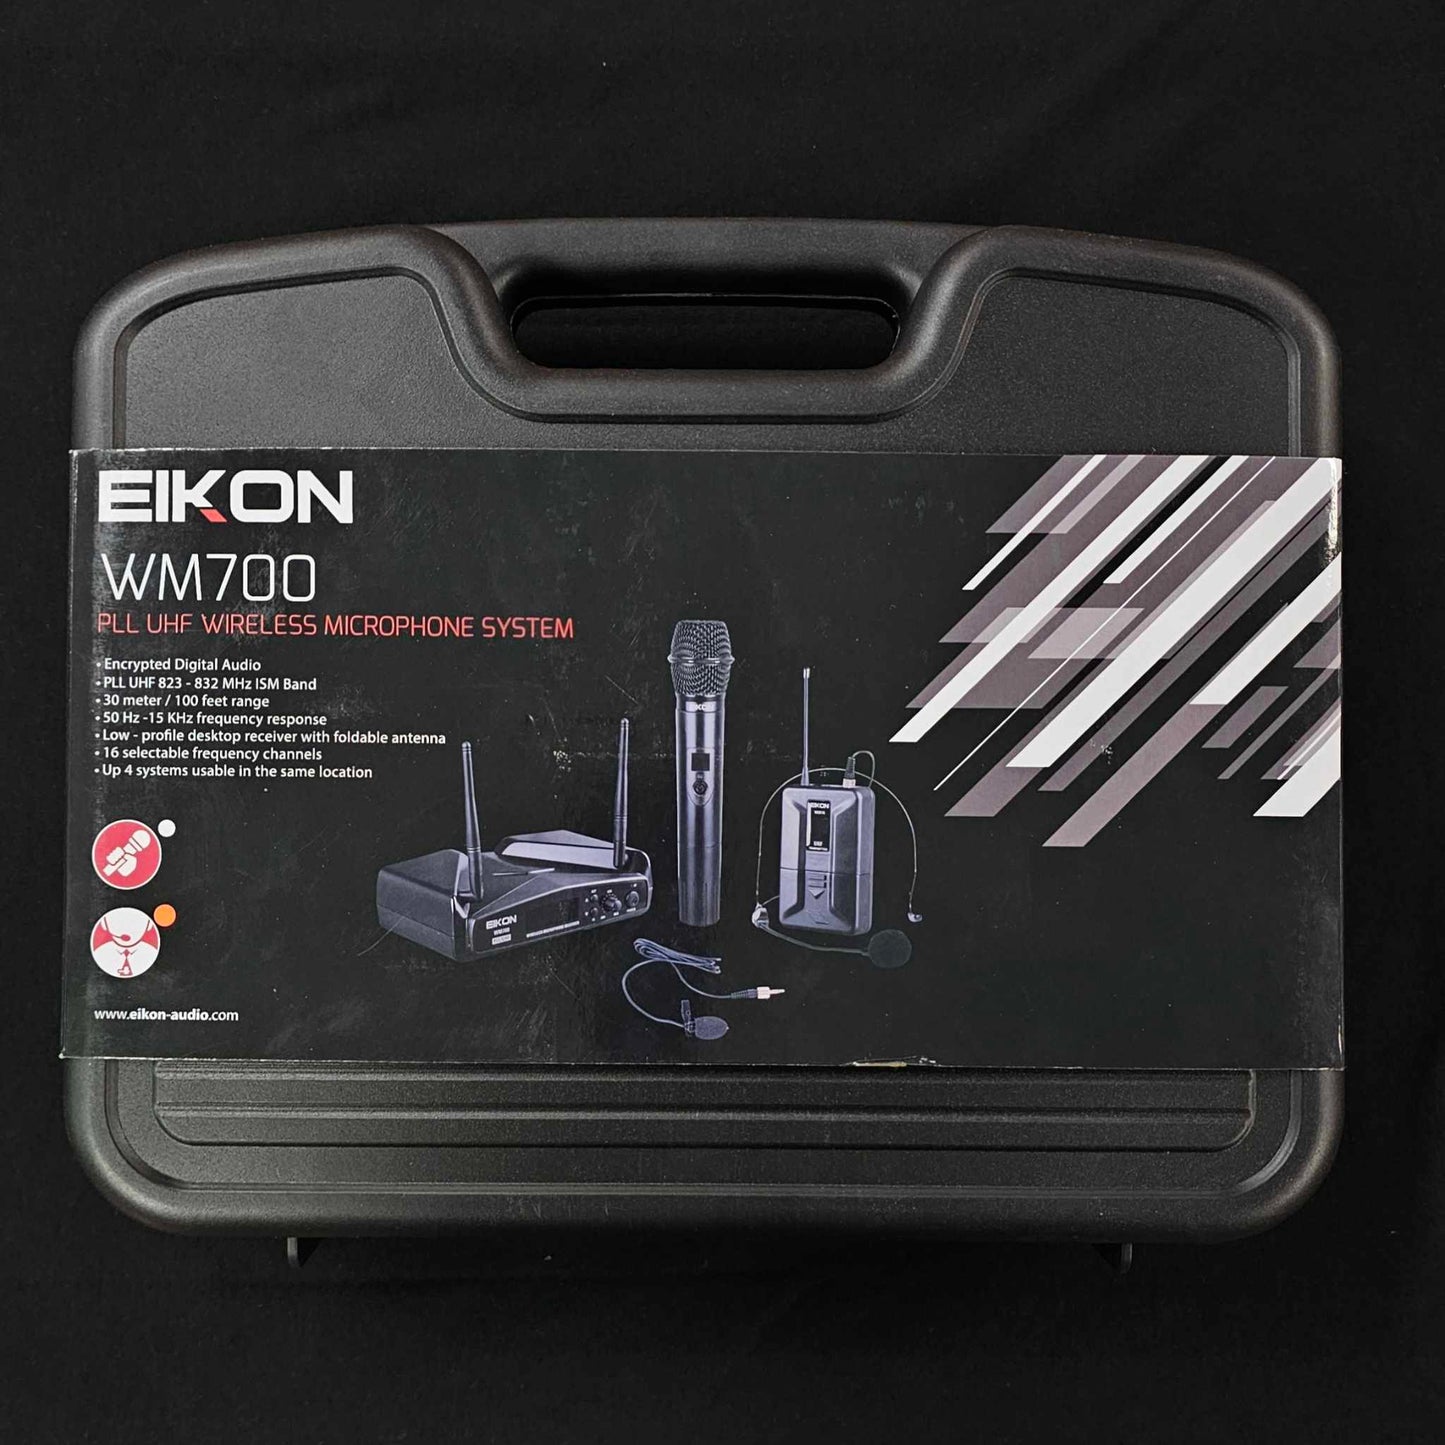 Eikon Wireless Microphone System